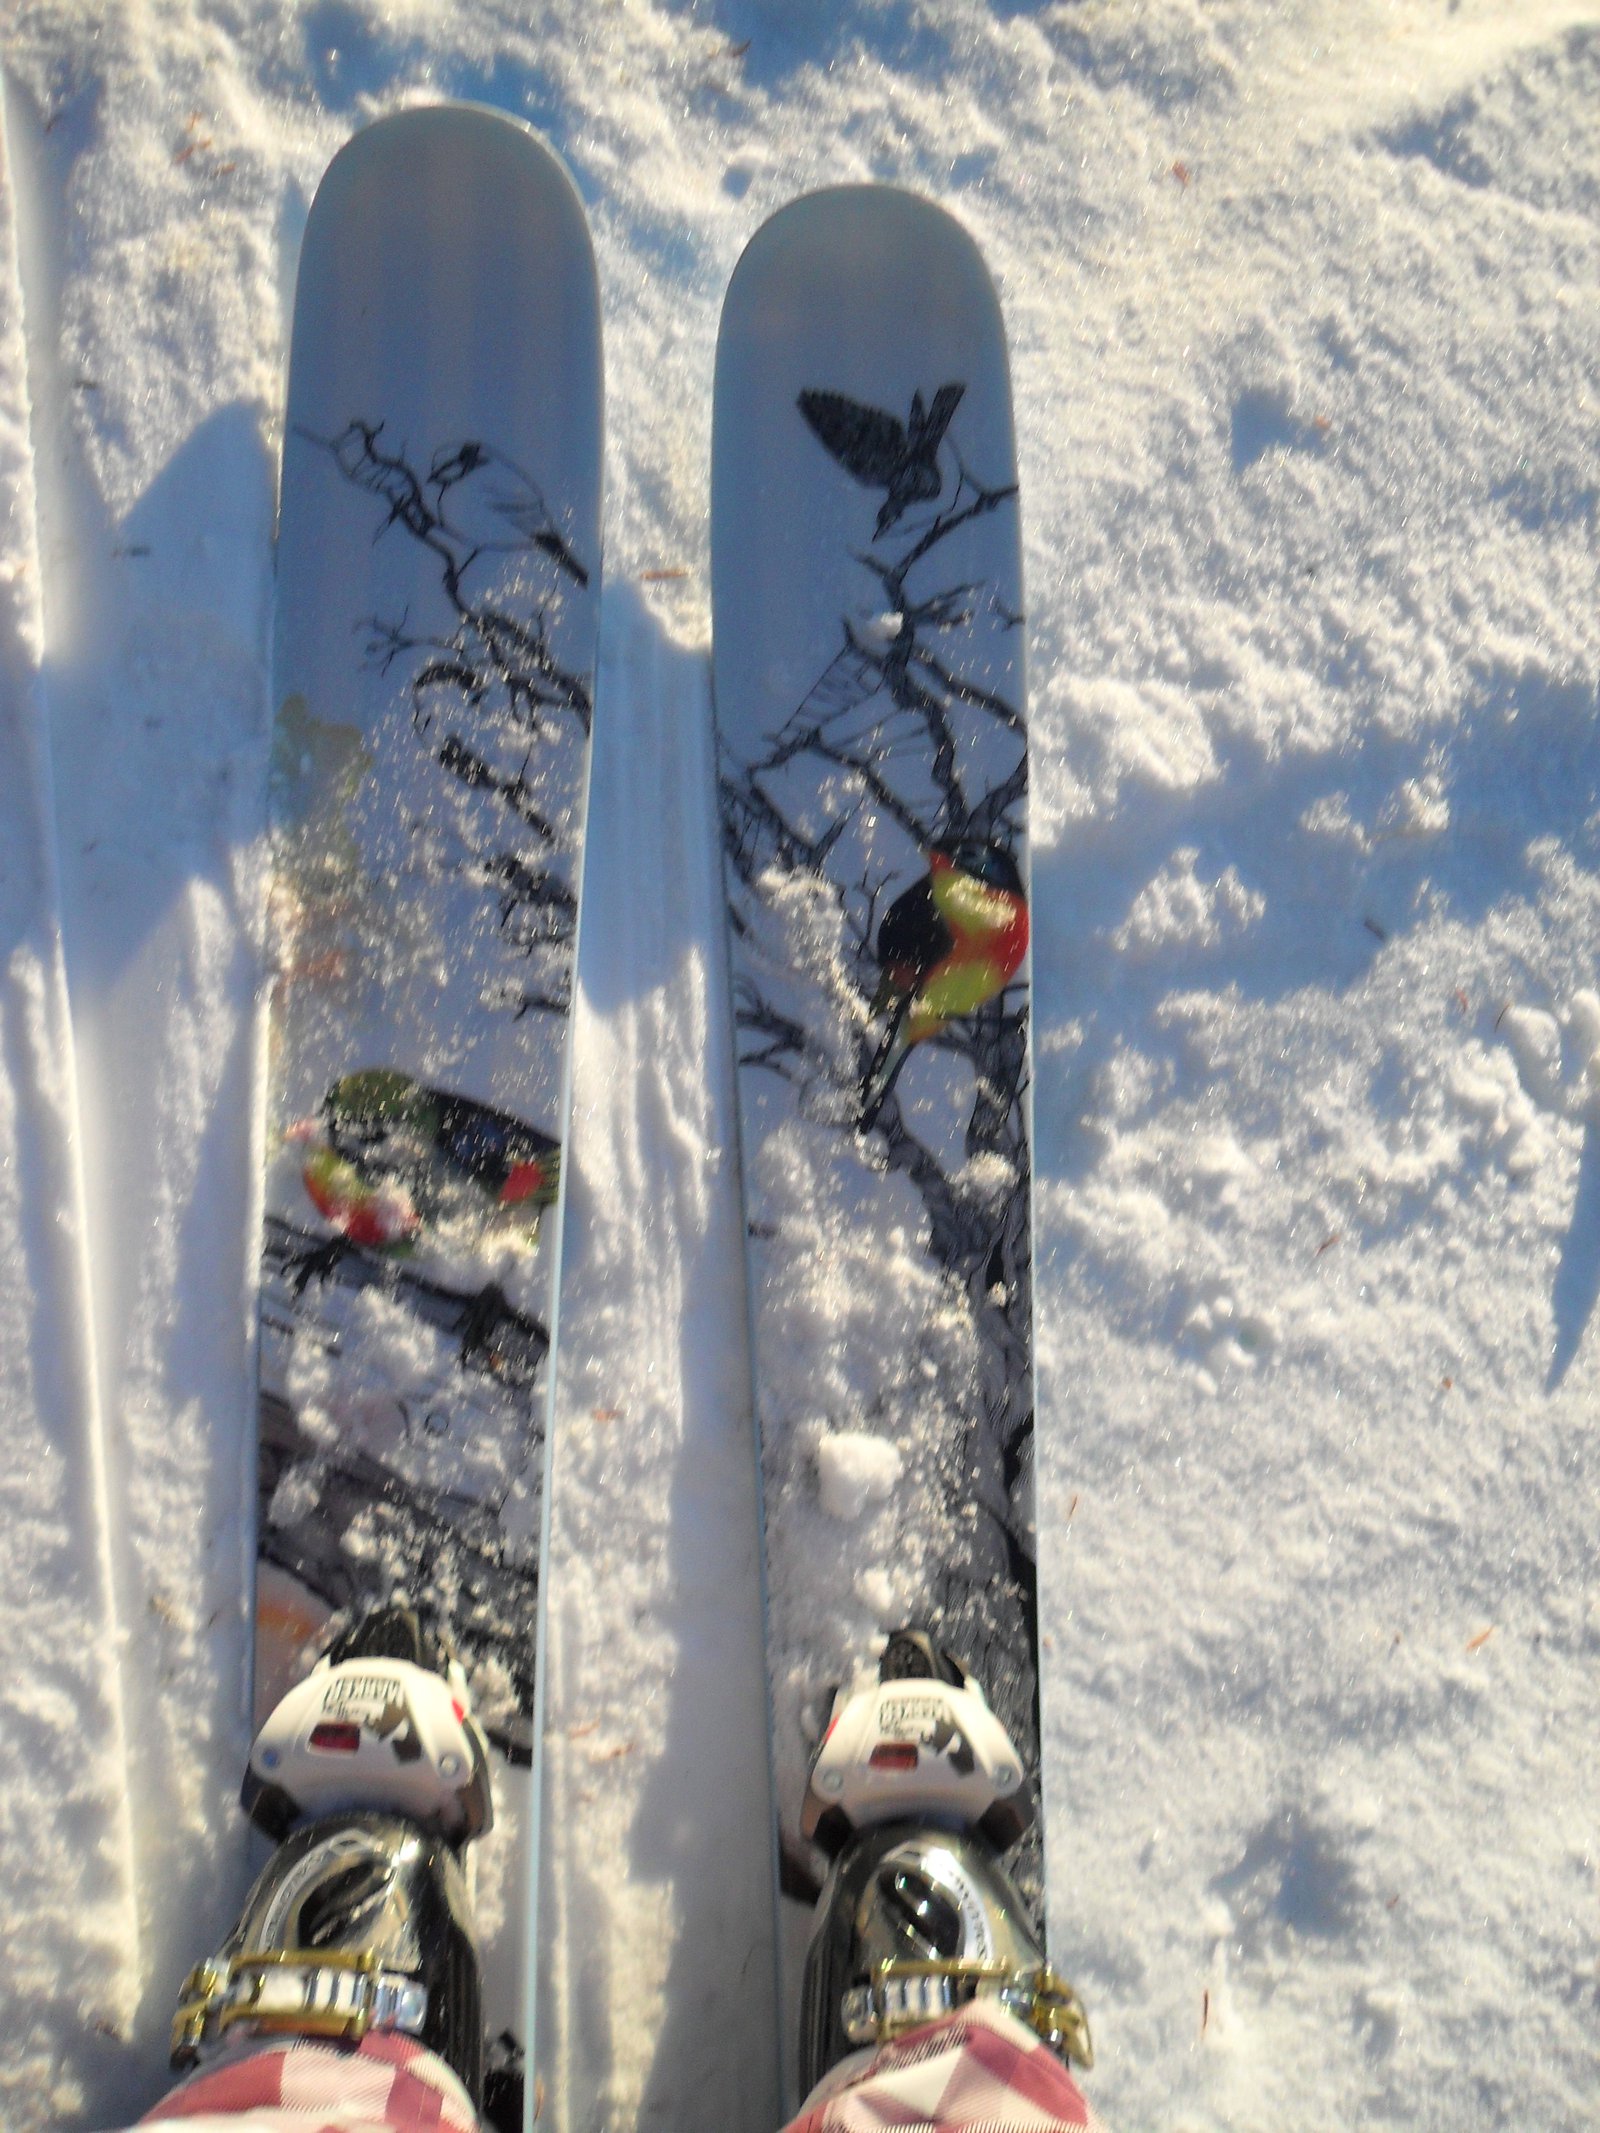 My skiiis